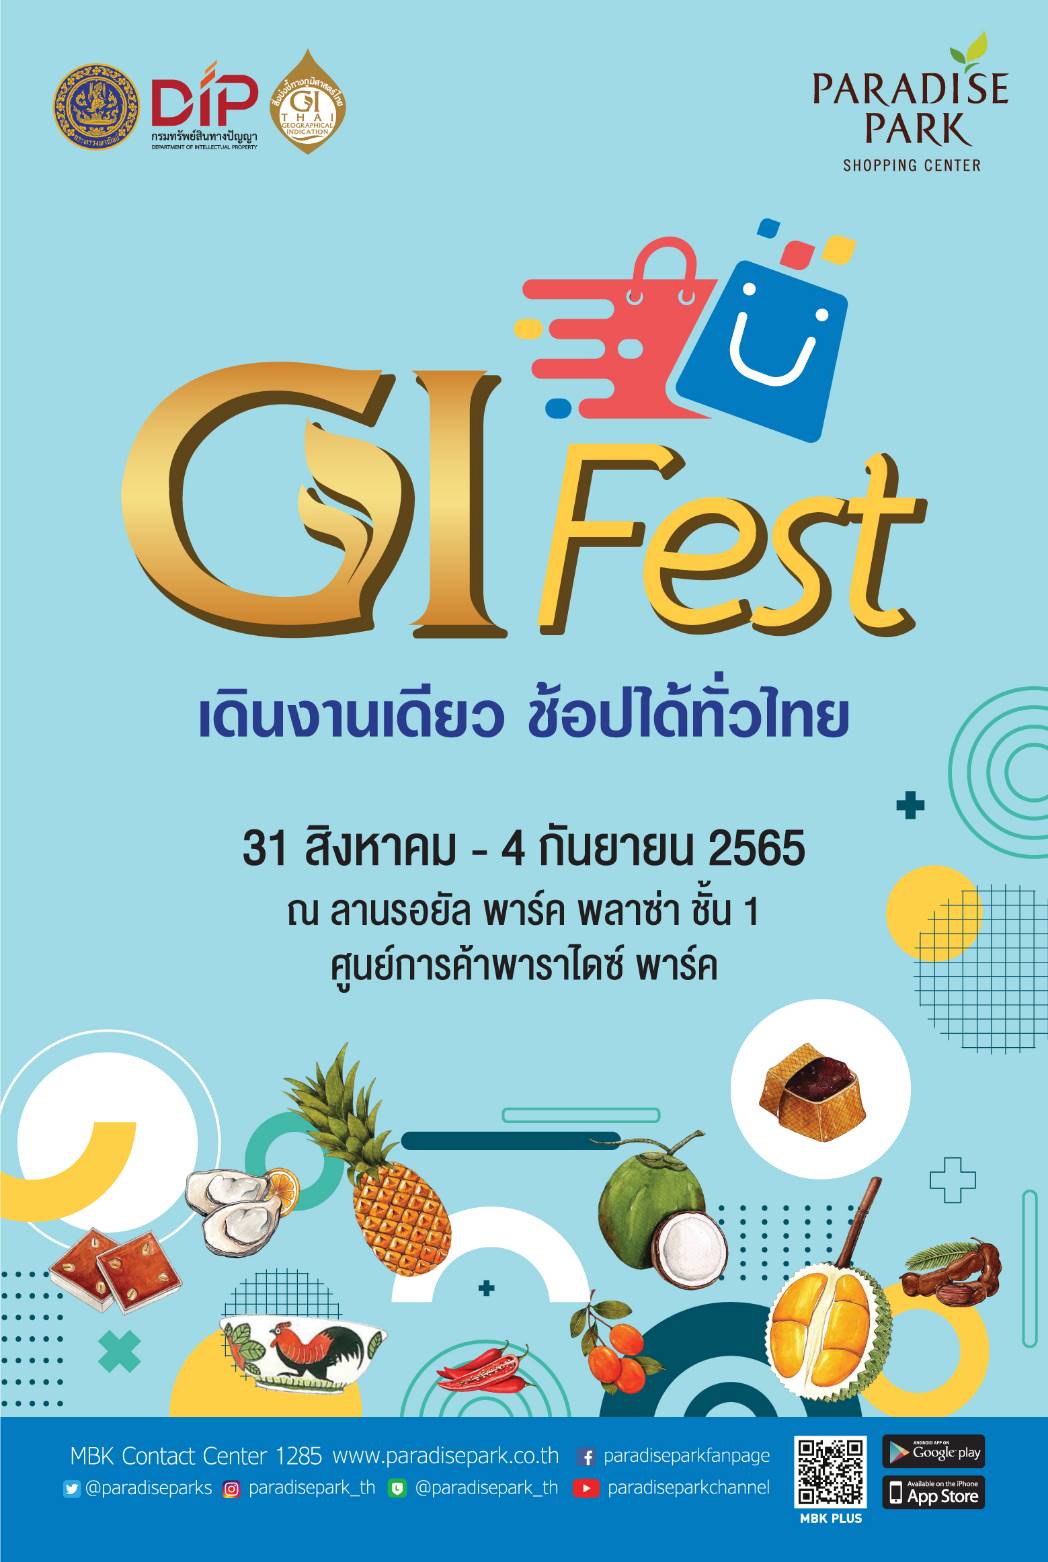 พาราไดซ์ พาร์ค ชวนช้อปของดีของแท้จากภูมิปัญญาท้องถิ่น ในงาน GI Fest เดินงานเดียว ช้อปได้ทั่วไทยตั้งแต่วันที่ 31 ส.ค. - 4 ก.ย.